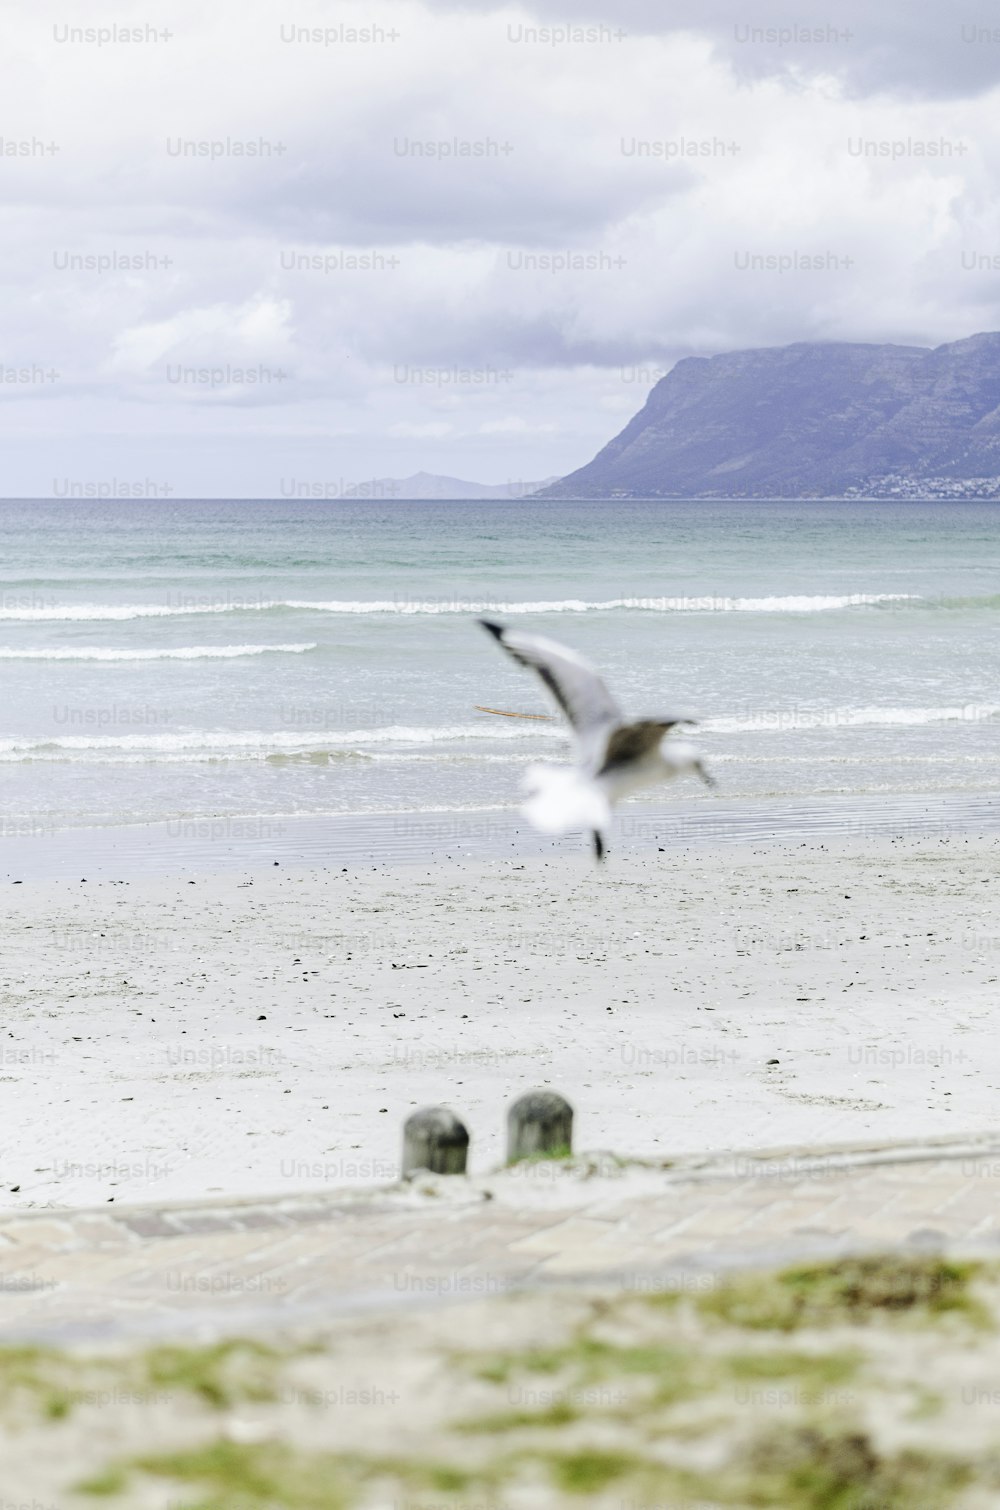 Un oiseau volant au-dessus d’une plage de sable au bord de l’océan